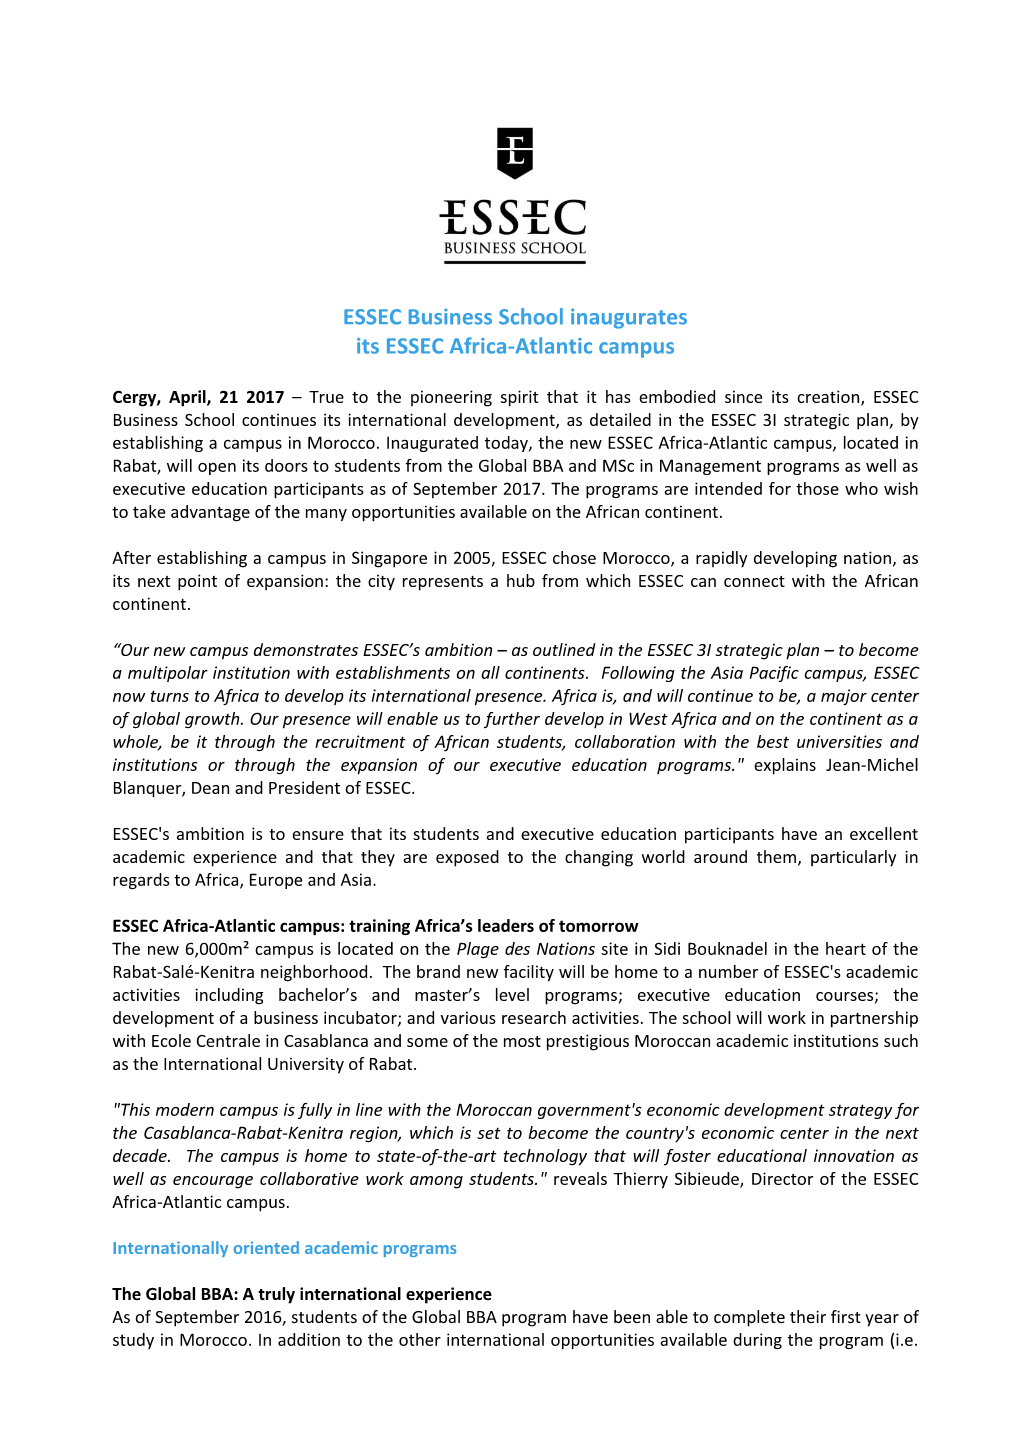 ESSEC Business School Inaugurates Its ESSEC Africa-Atlantic Campus